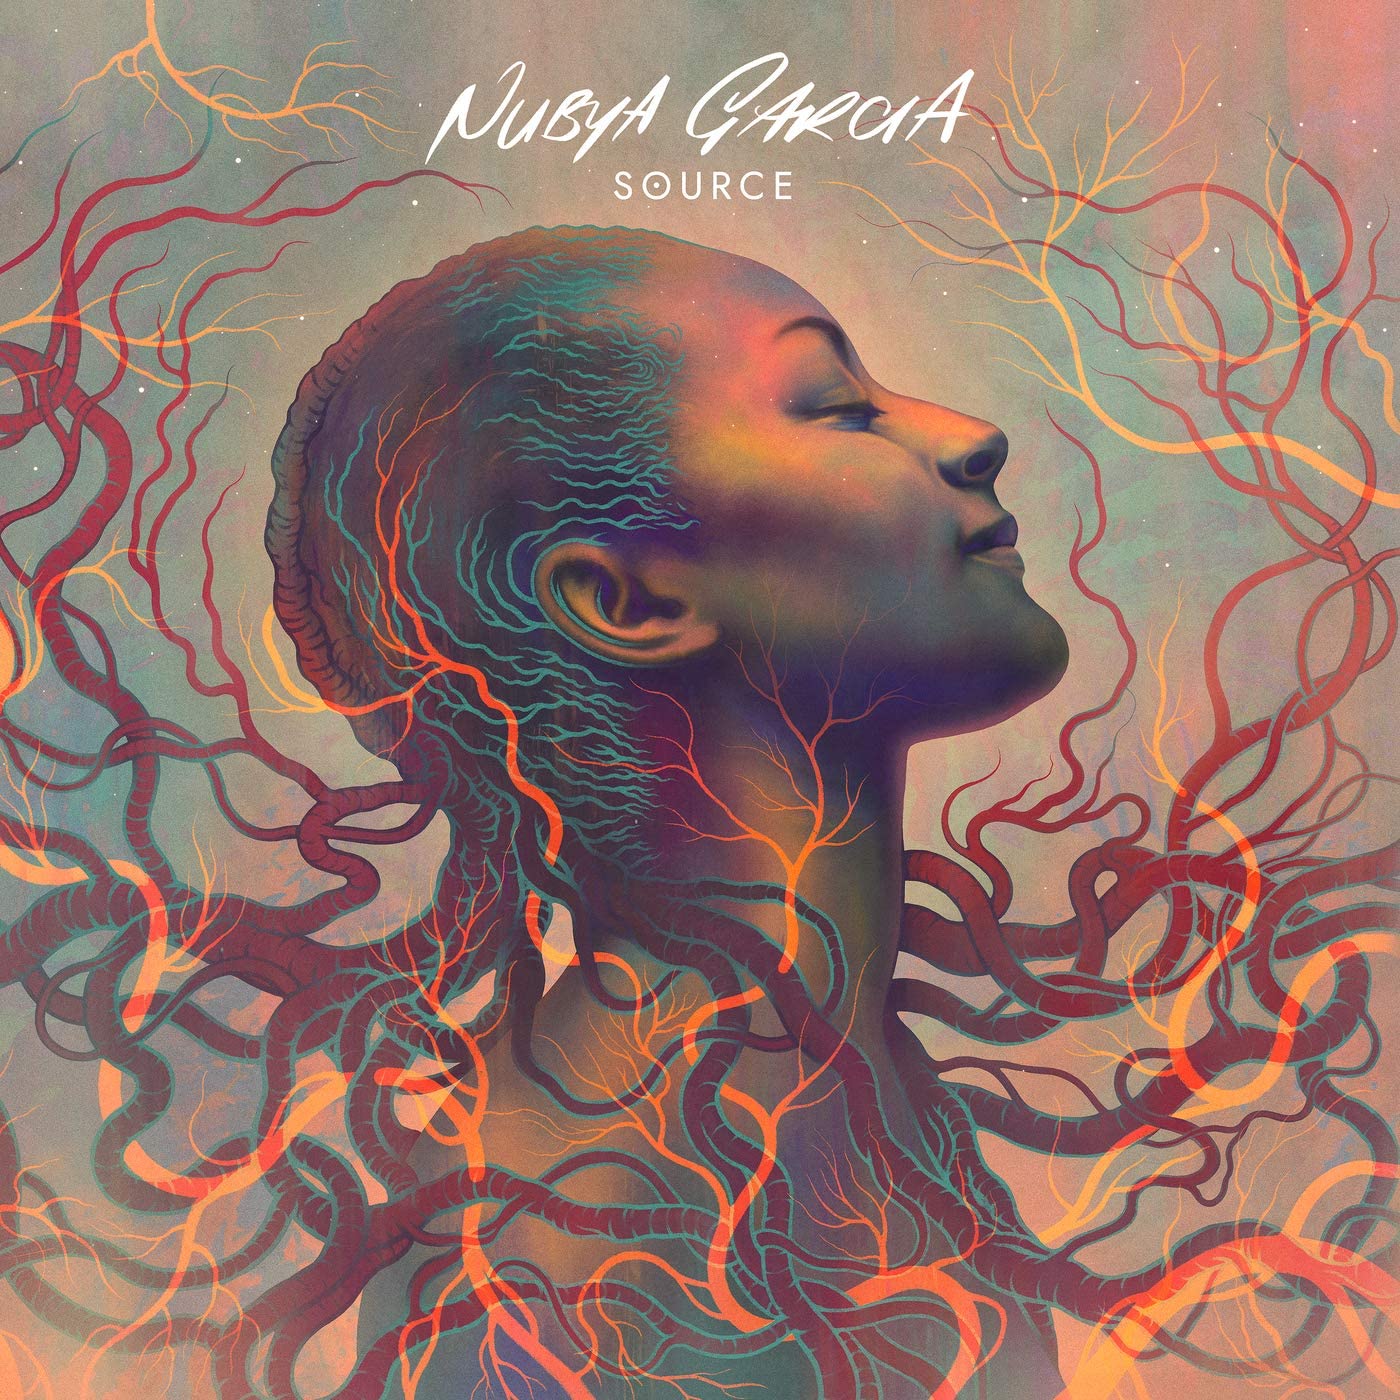 Обложка альбома Нубия Гарсия – SOURCE